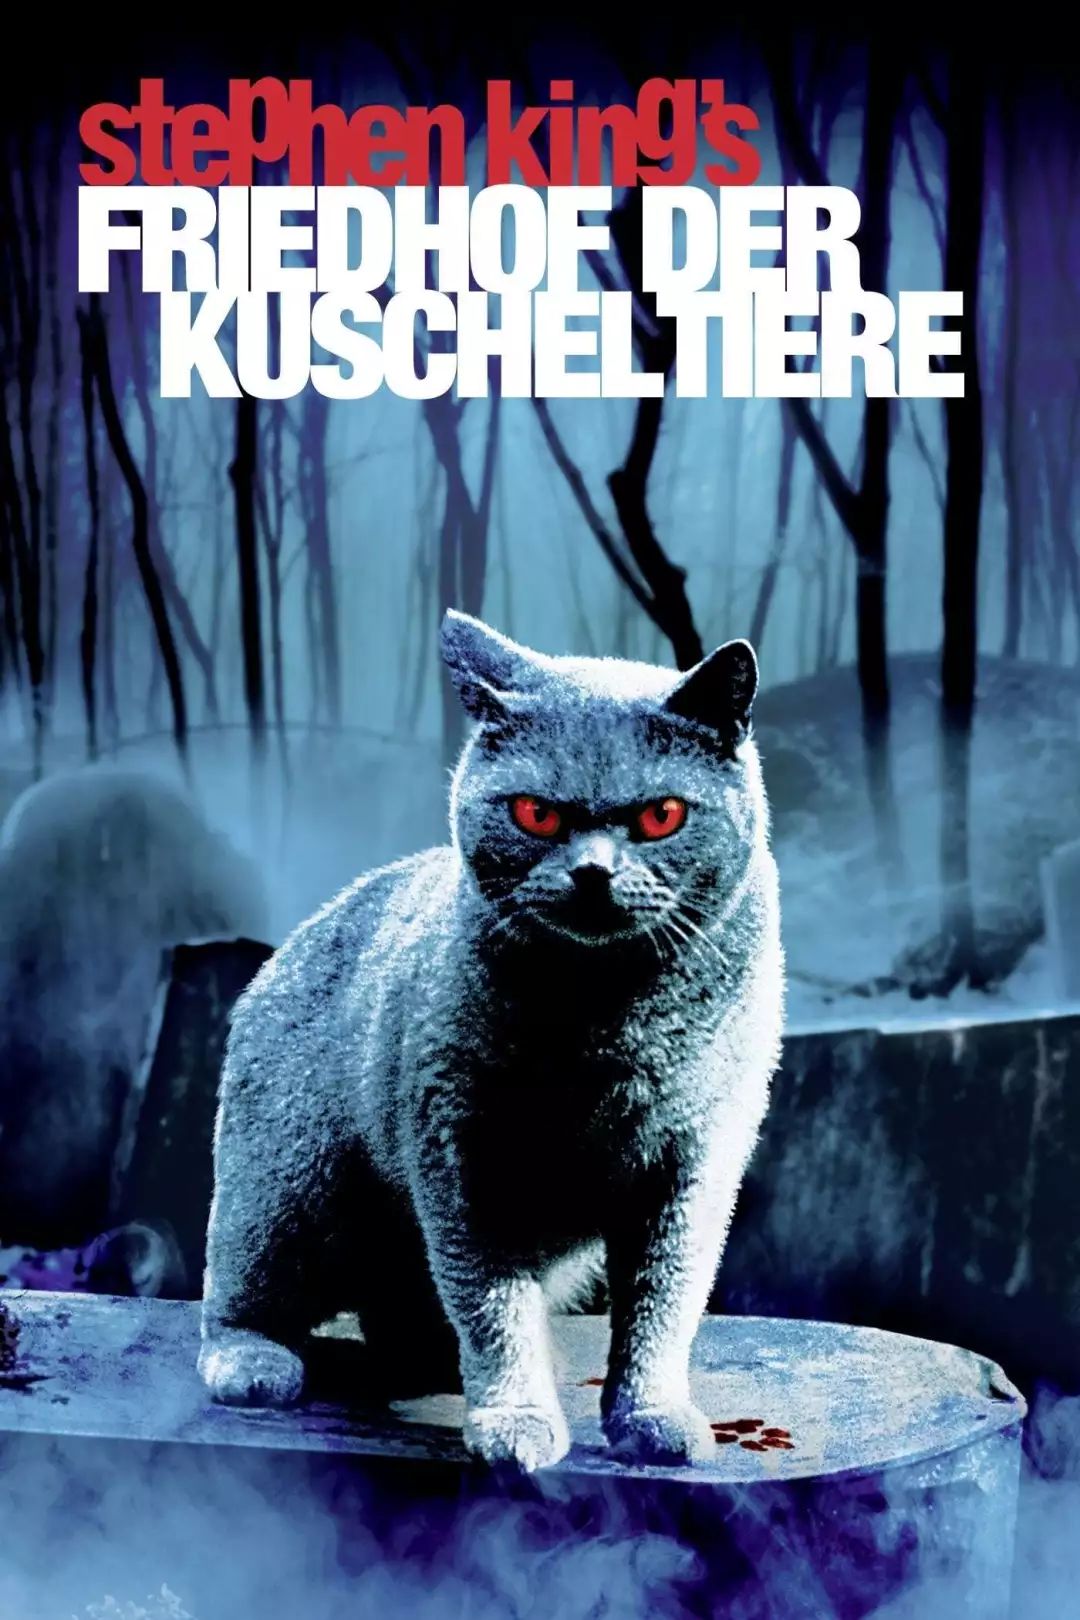 1989年[宠物坟场]就被拍成了电影,影片惊悚的风格把猫塑造的嗜血狰狞